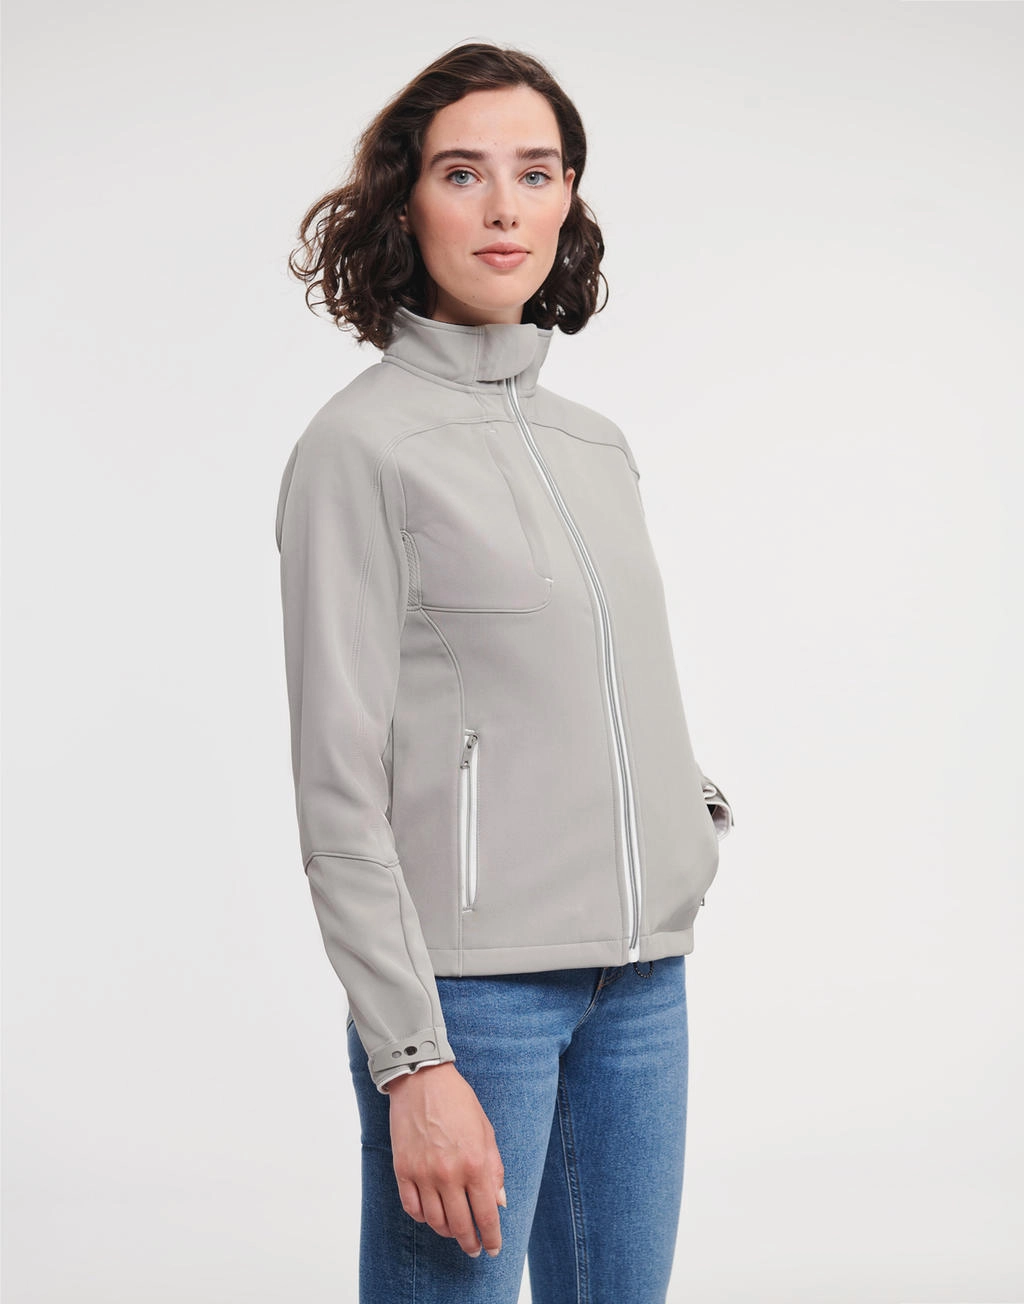 Ladies` Bionic Softshell Jacket zum Besticken und Bedrucken mit Ihren Logo, Schriftzug oder Motiv.